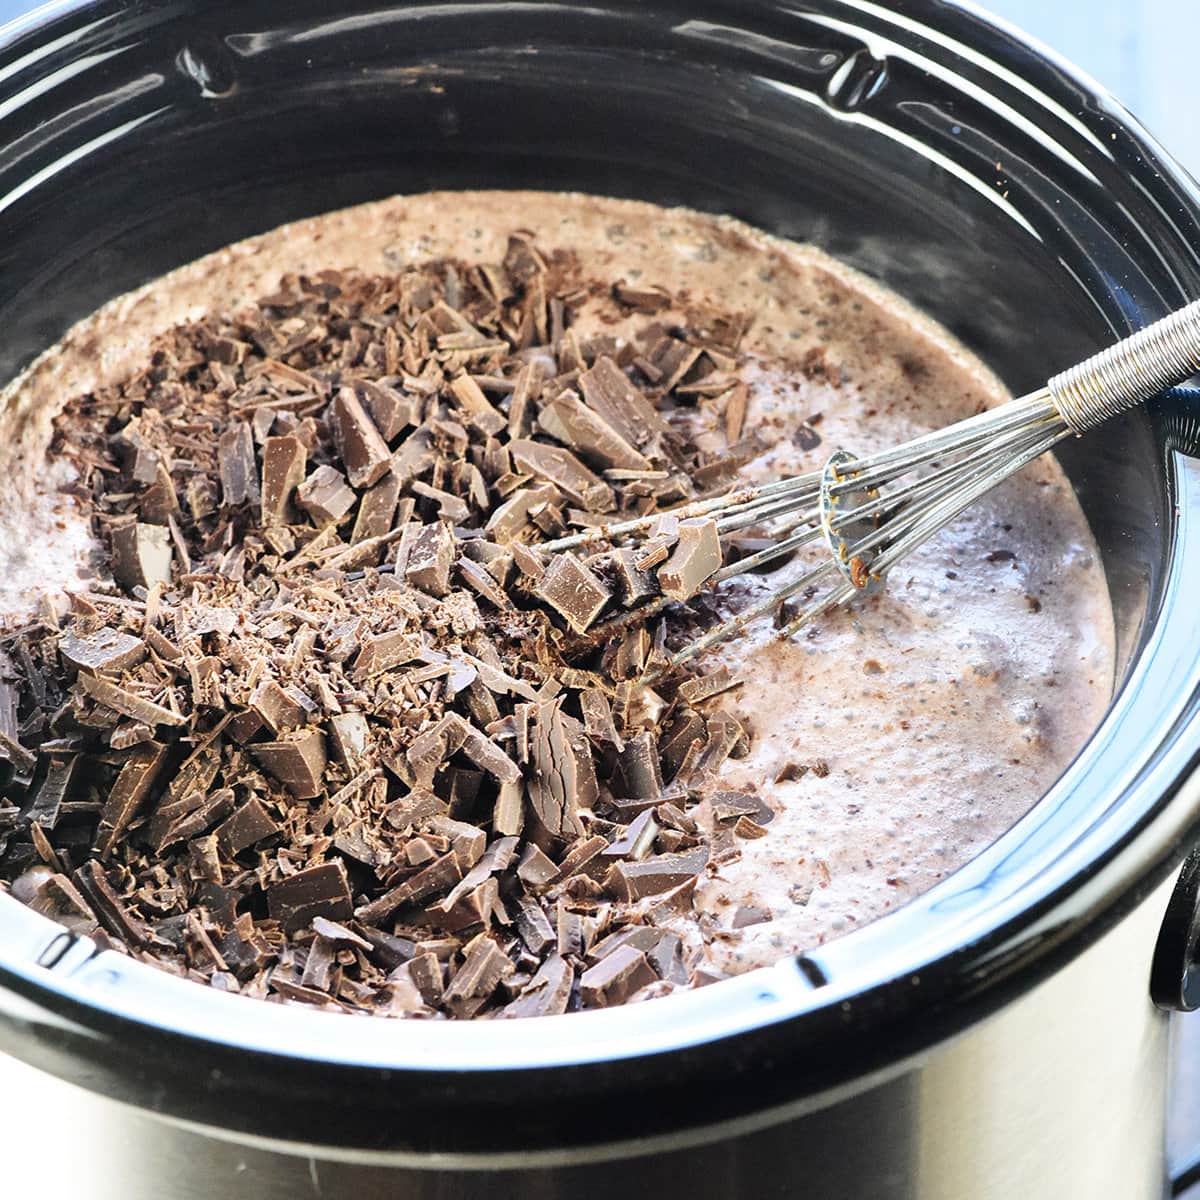 How to Adjust Crock Pot Servings - Recipes That Crock!